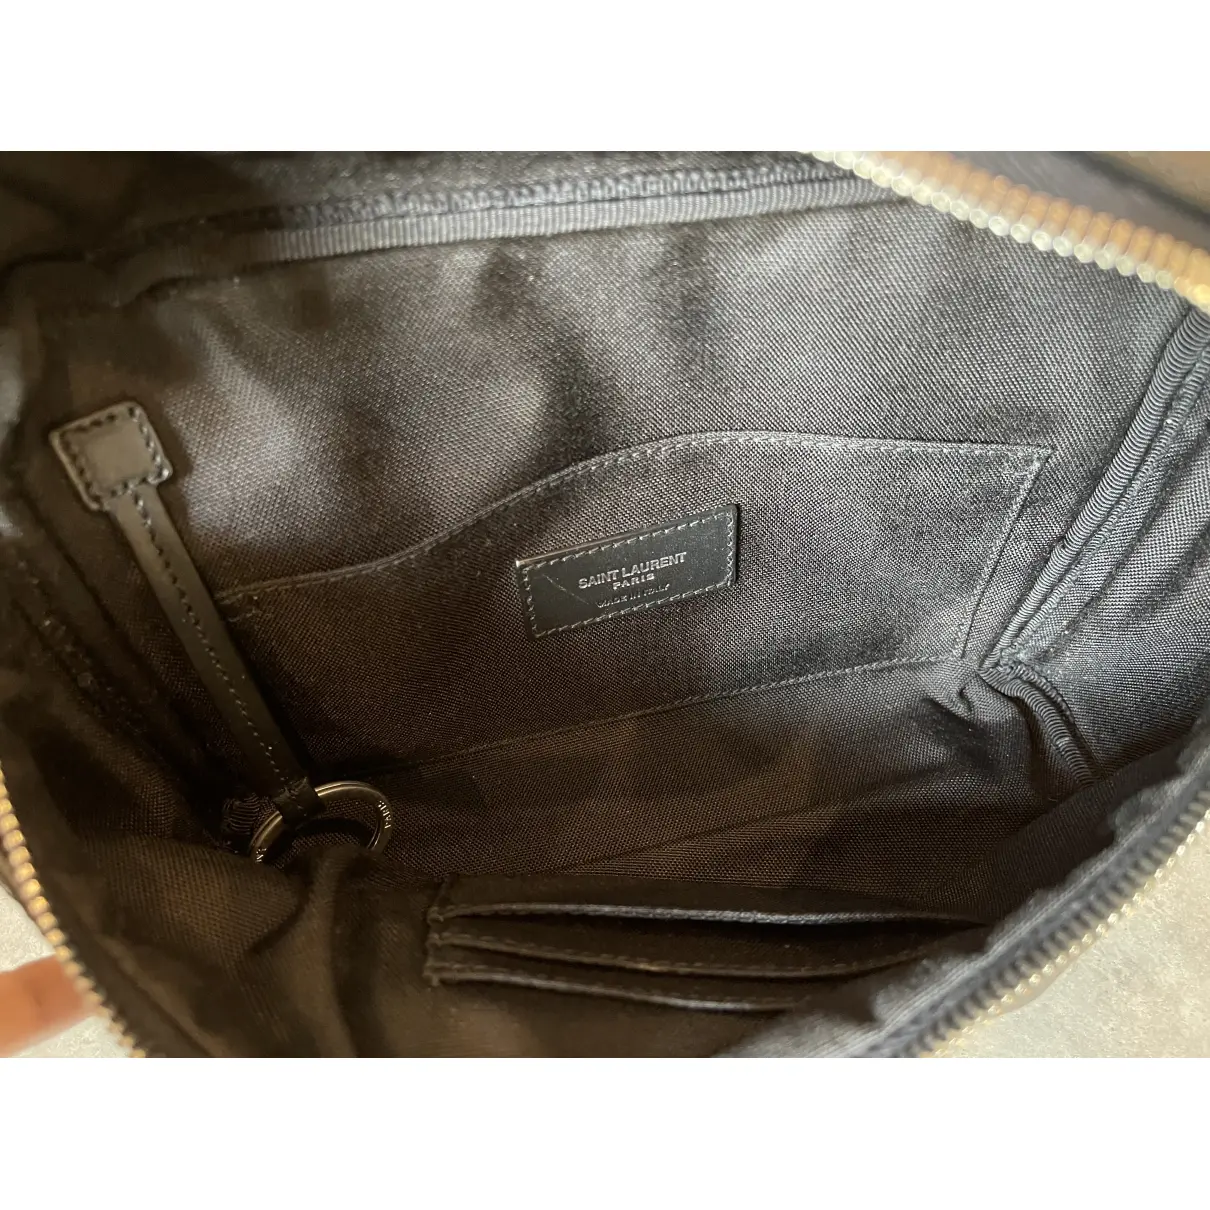 Leather satchel Saint Laurent